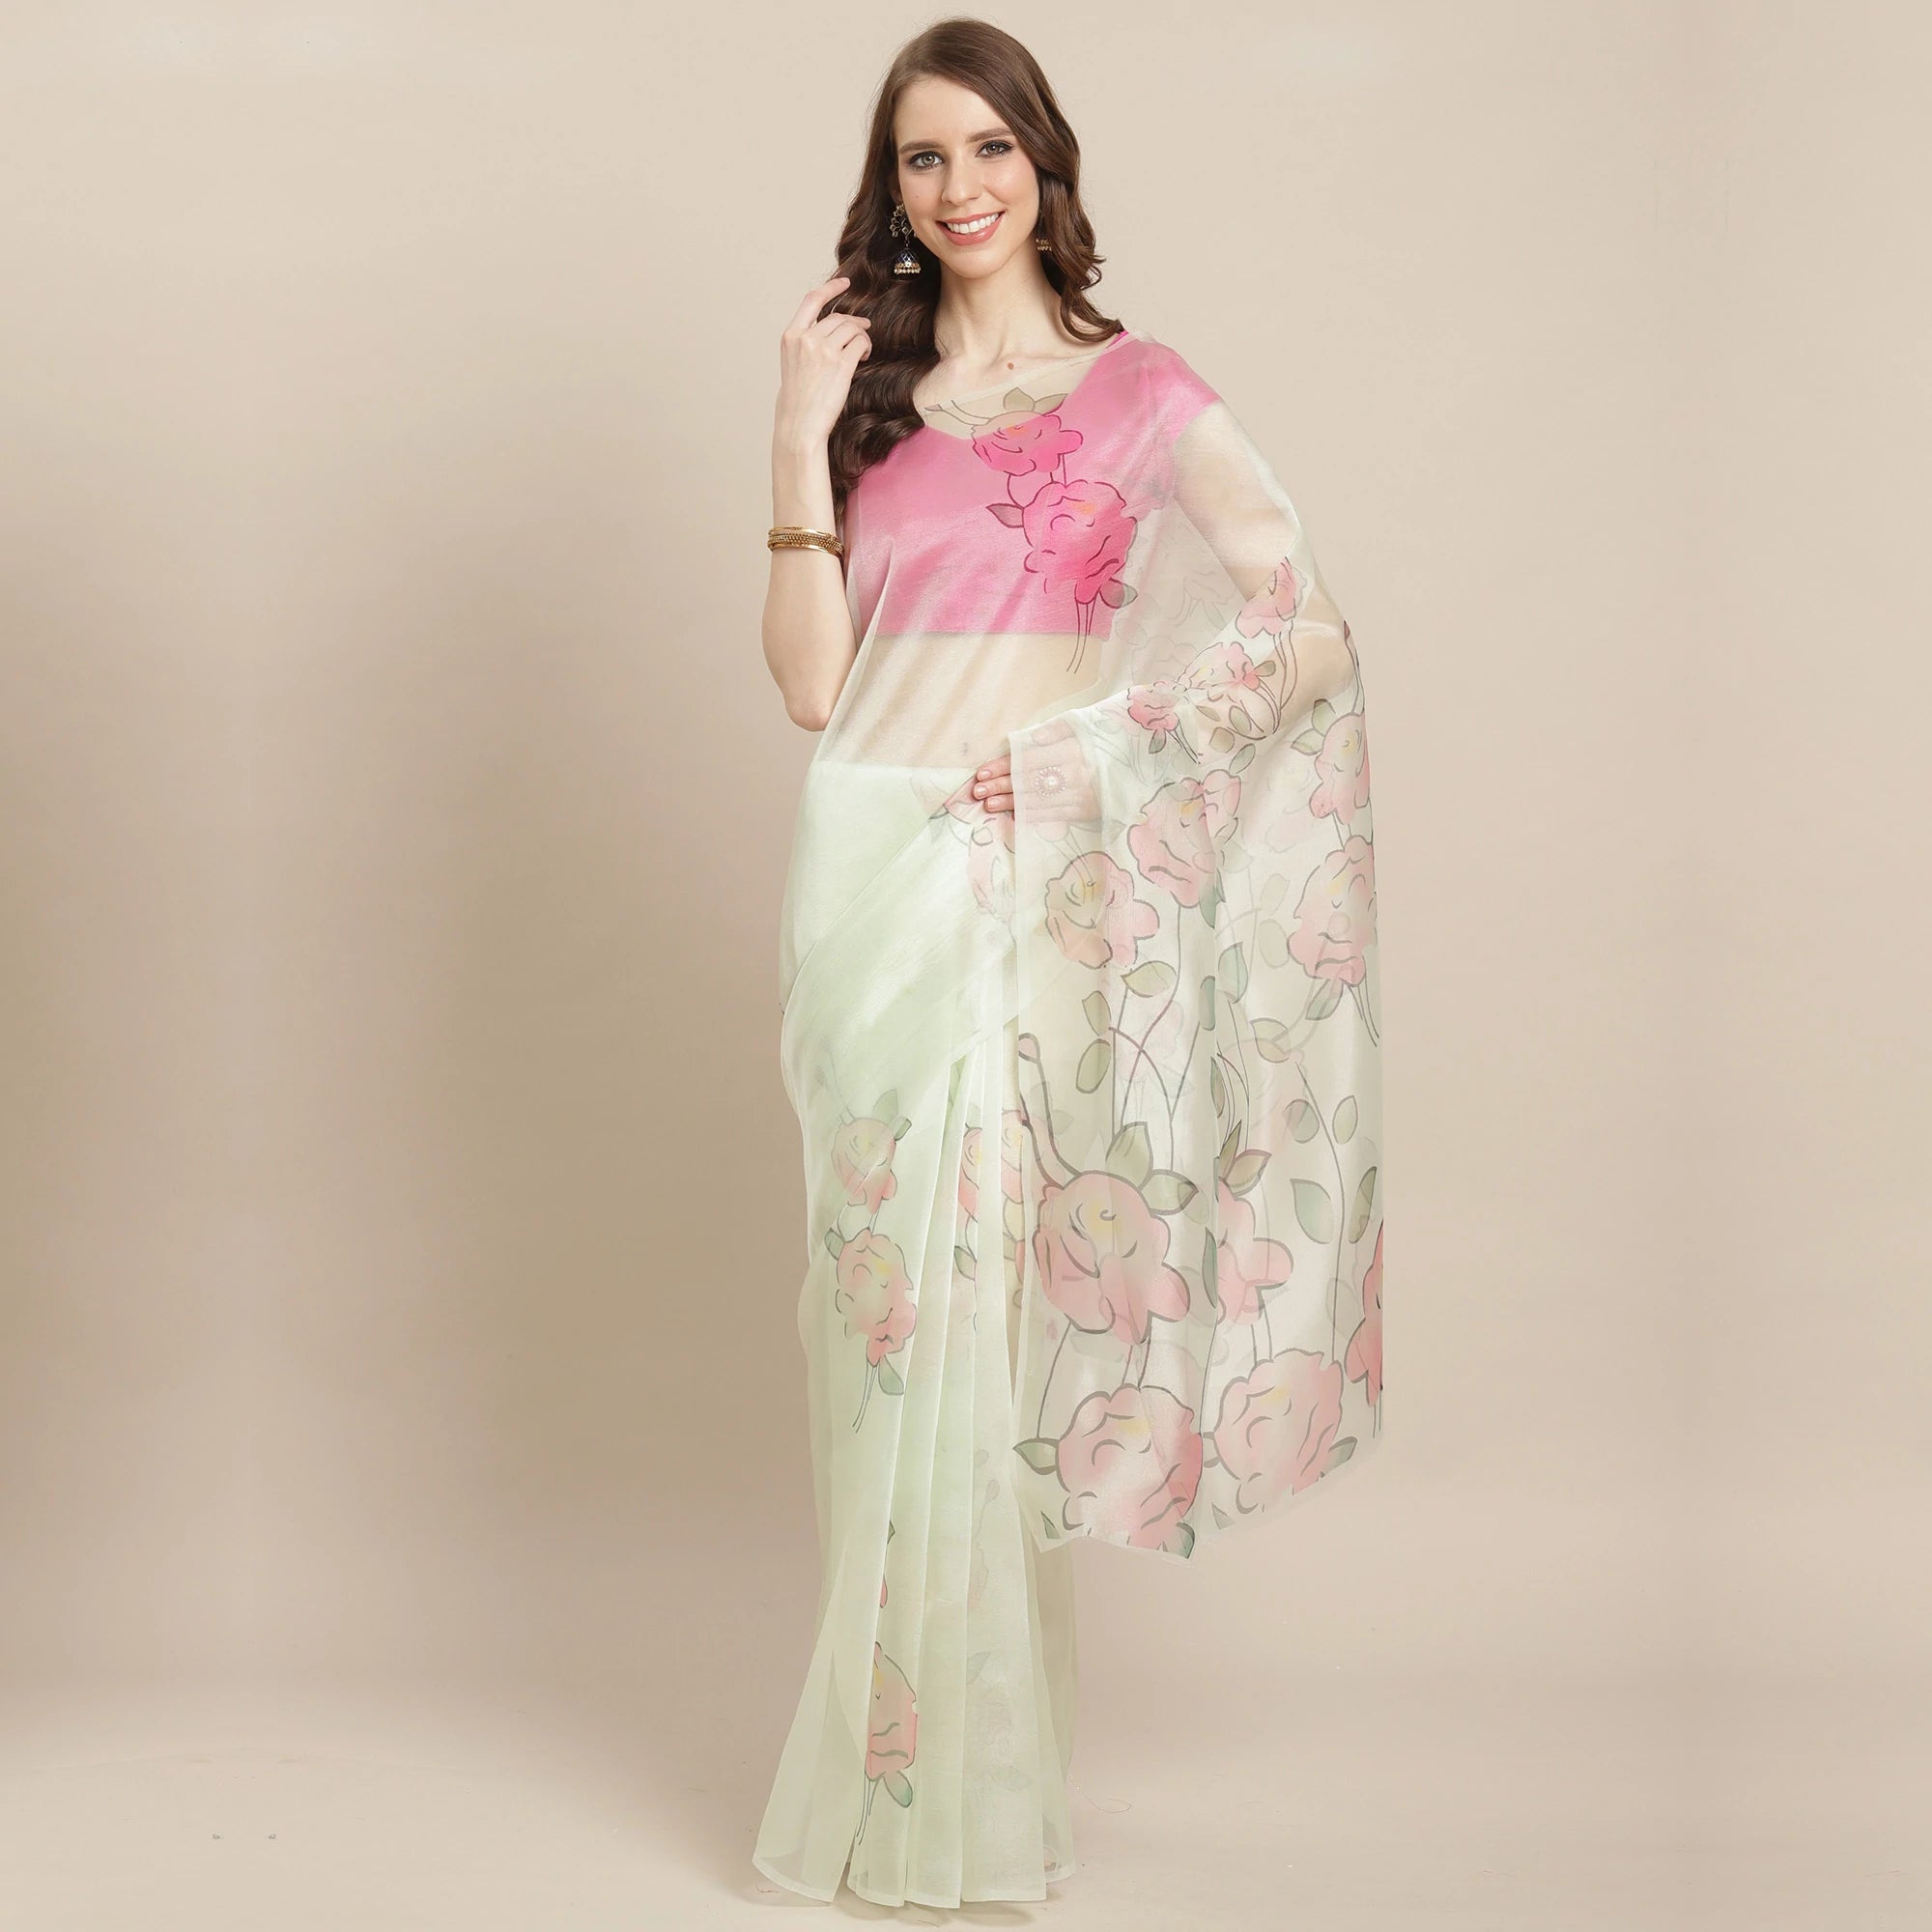 Share more than 67 flipkart sarees below 500 rupees super hot